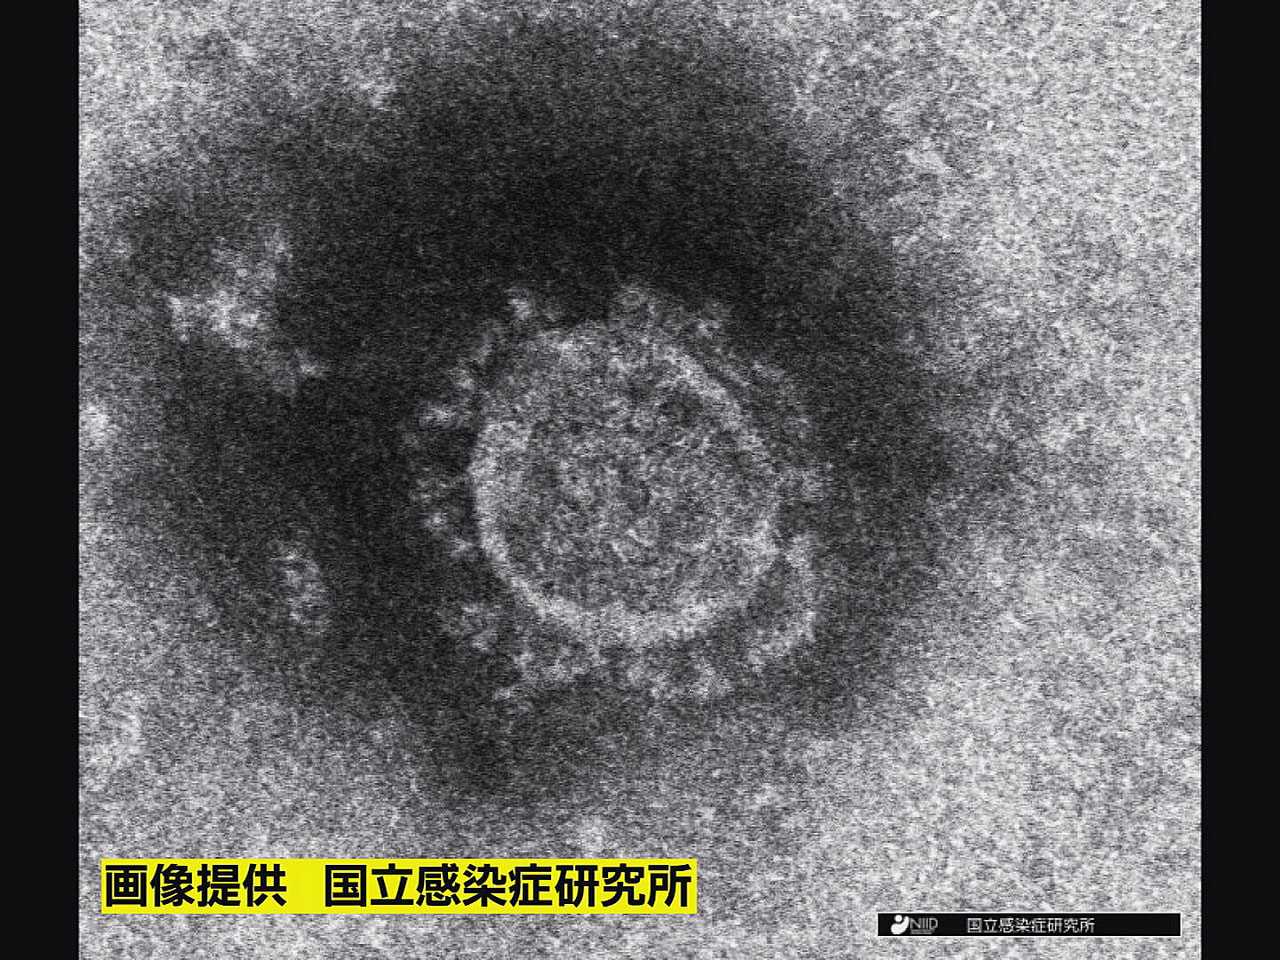 岐阜県は１３日、新型コロナウイルスの新規感染者が６１０人確認されたと発表しました...